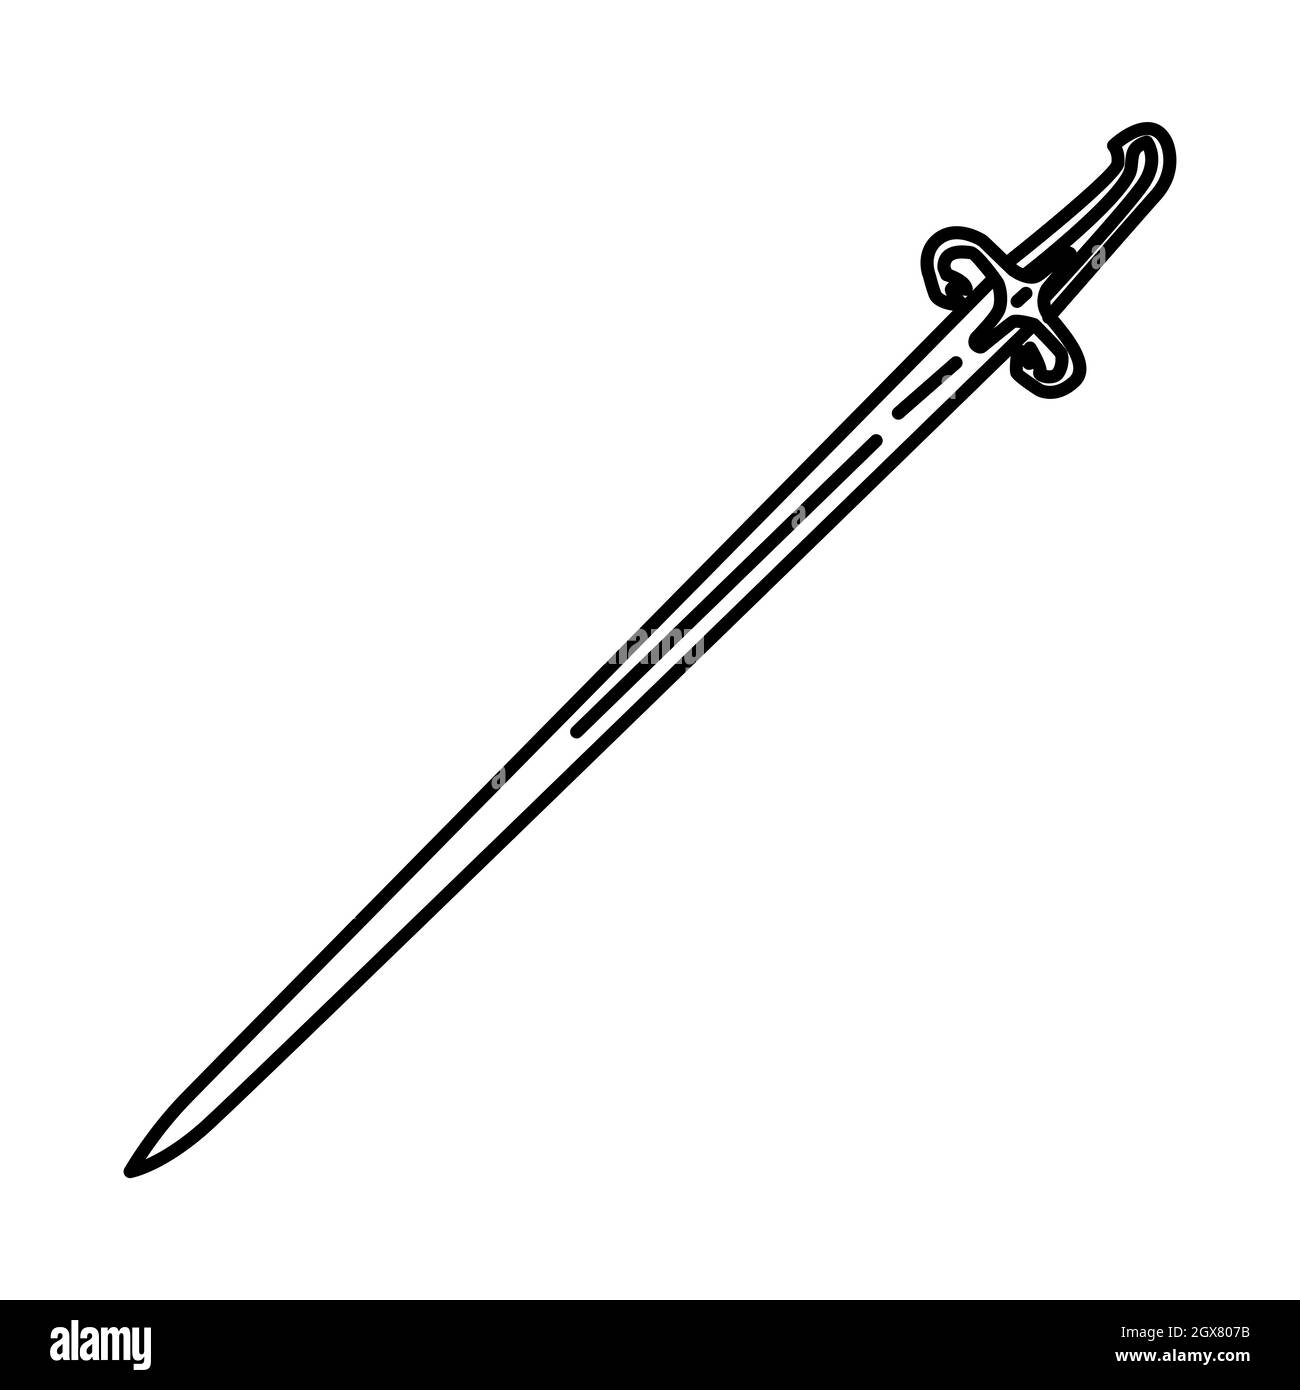 Ma thur al-Fijar Profeta Muhammad spada storica parte di oggetti storici musulmani icone disegnate a mano set Vector. Illustrazione Vettoriale